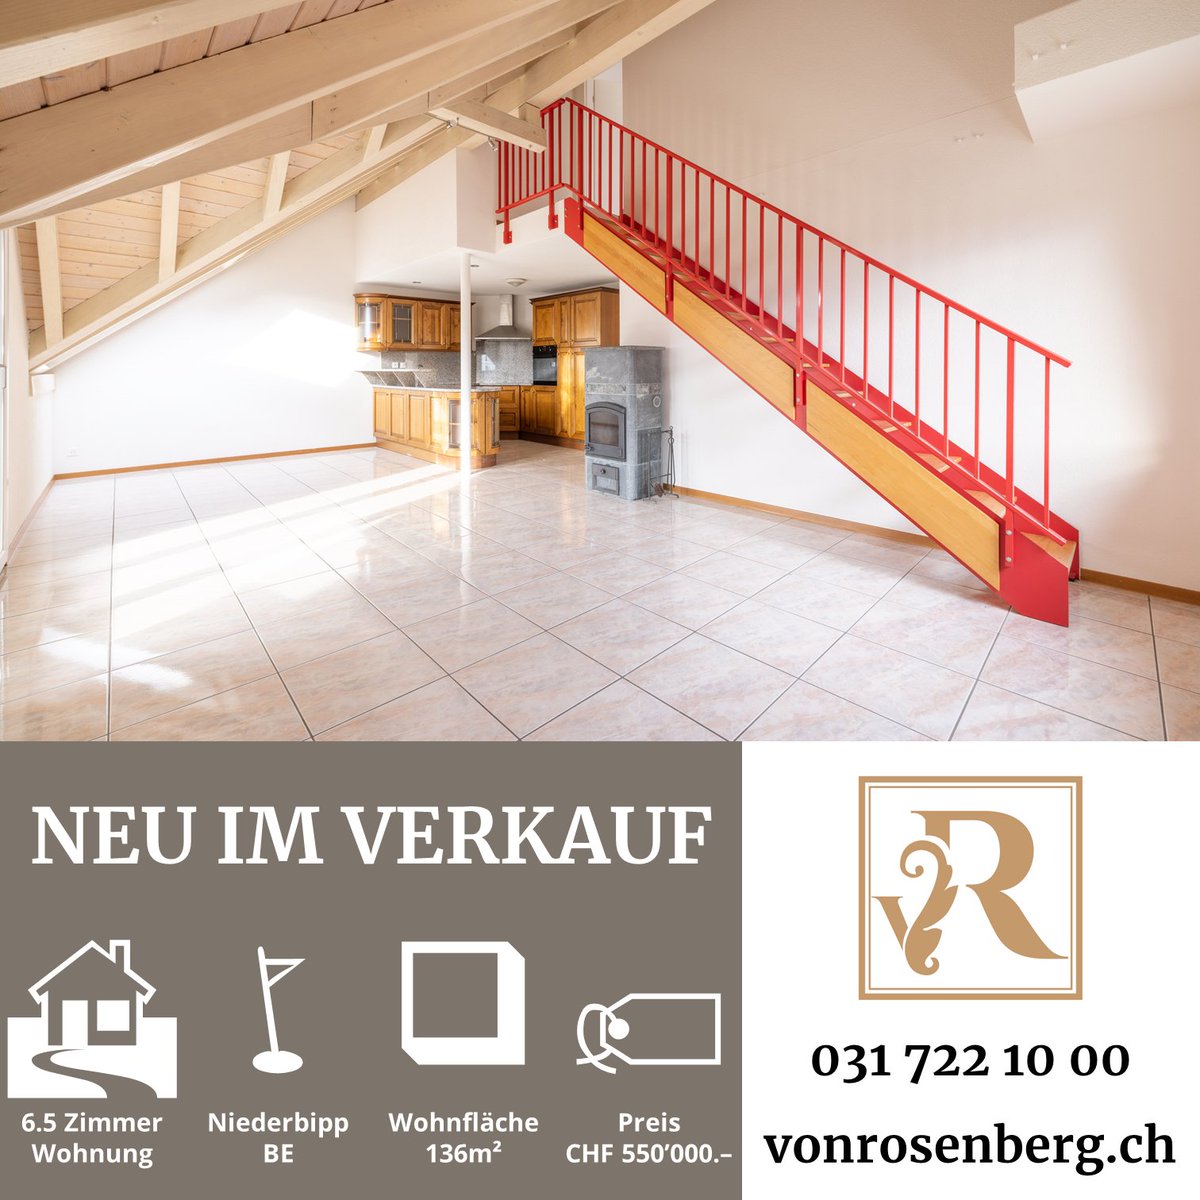 🏡 NEU IM #VERKAUF

QUALITATIVER #WOHNRAUM

#Immobilie: 6.5 Zimmer #Maisonette #Dachwohnung
Wohnfläche: 136m²
Ort: #Niederbipp BE
Preis: CHF 550'000.–

🌐 vonrosenberg.ch

#immo #immonews #wohnung #immomarkt #schweiz #immoverkauf #homeforsale #realestate #home #forsale